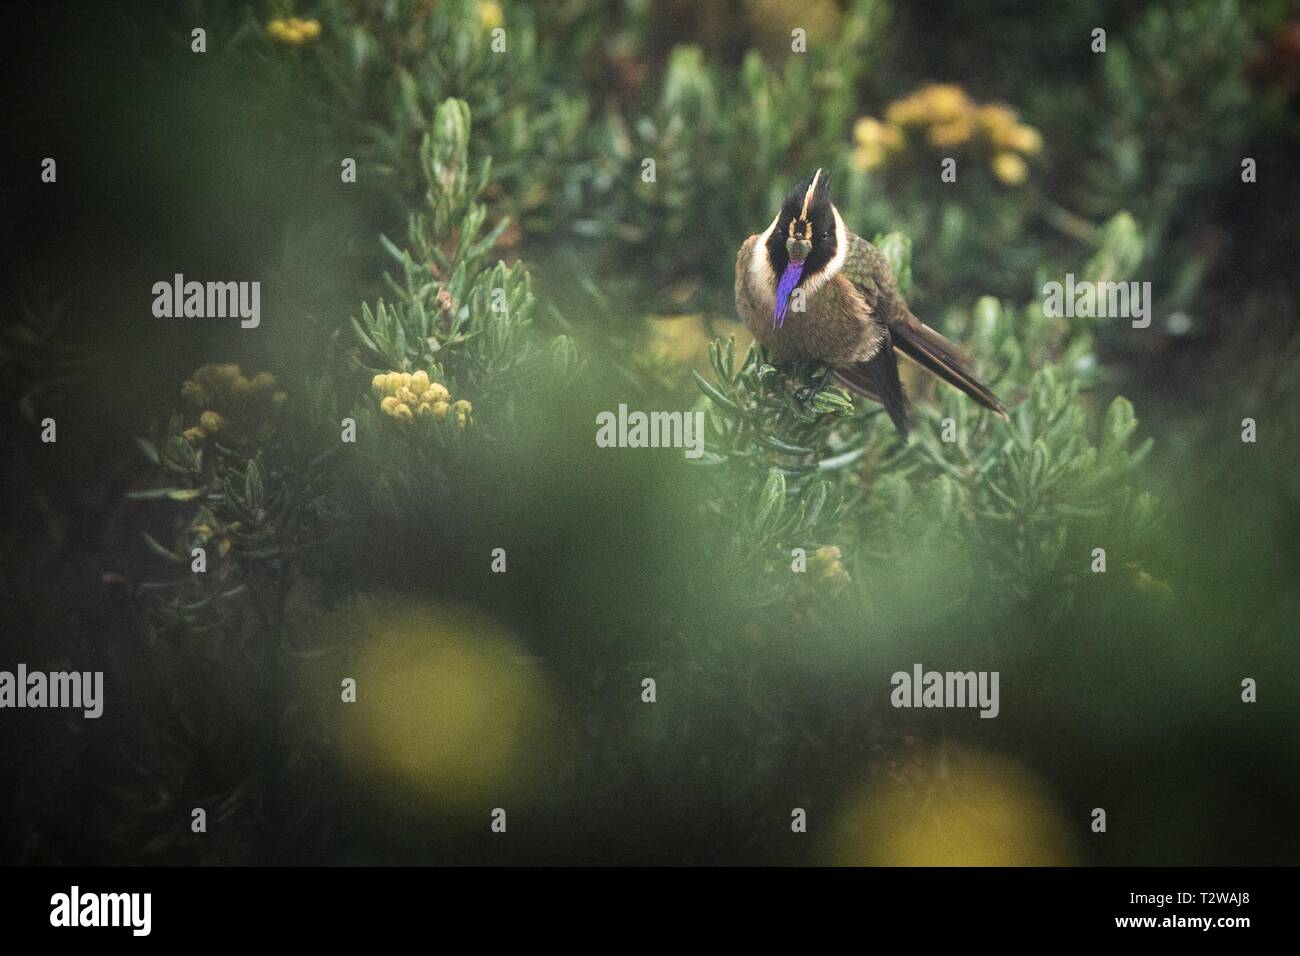 Green-helmetcrest barbu reposant sur l'arbre à fleurs jaunes, la Colombie, hummingbird de sucer le nectar des fleurs,des animaux de haute altitude dans ses études Banque D'Images